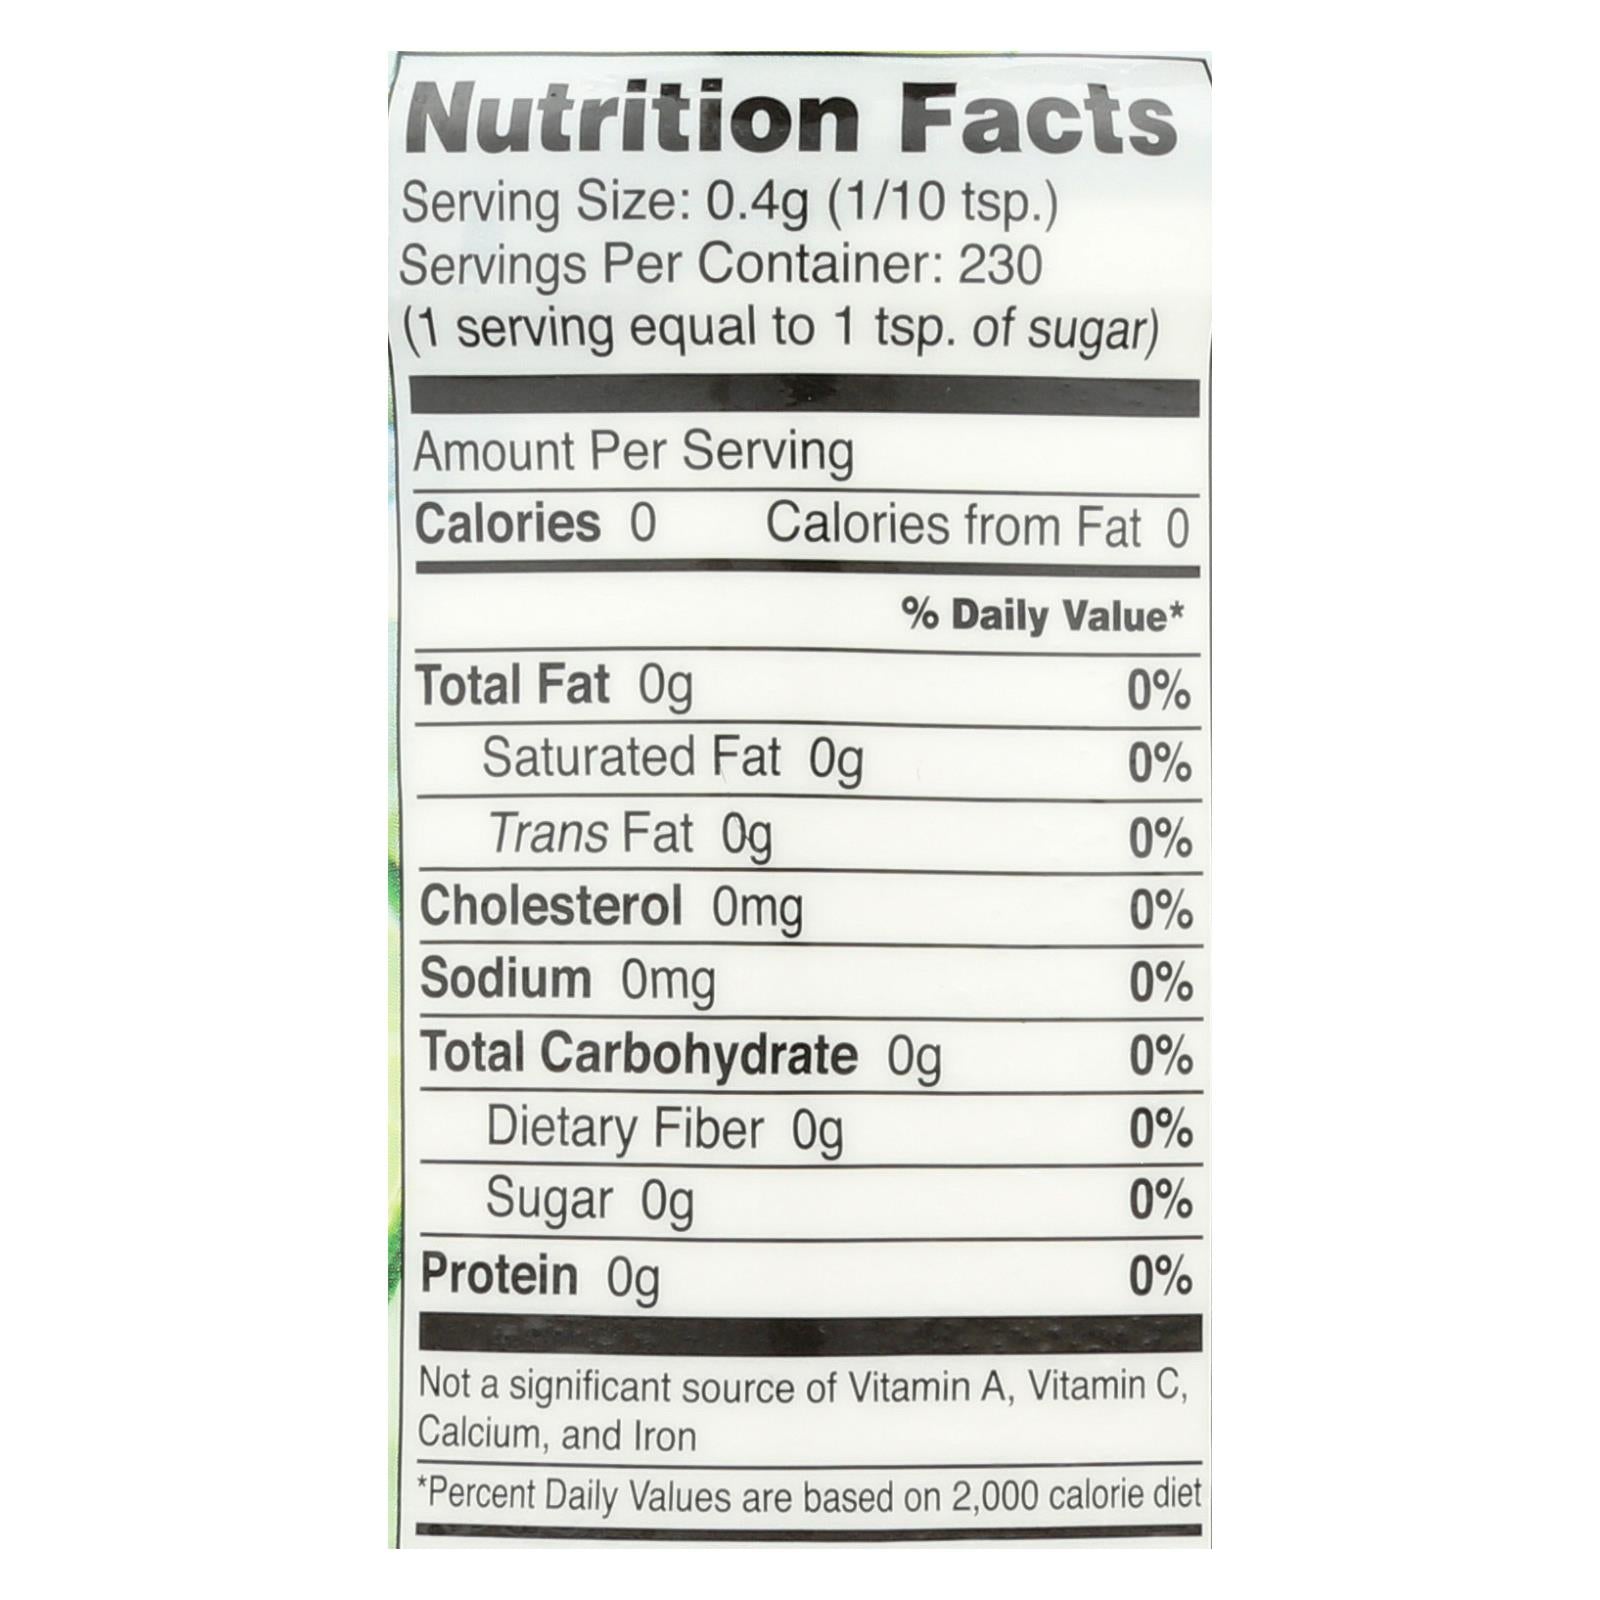 Sweet Leaf Sweetener - Organic - Stevia - 3.2 Oz